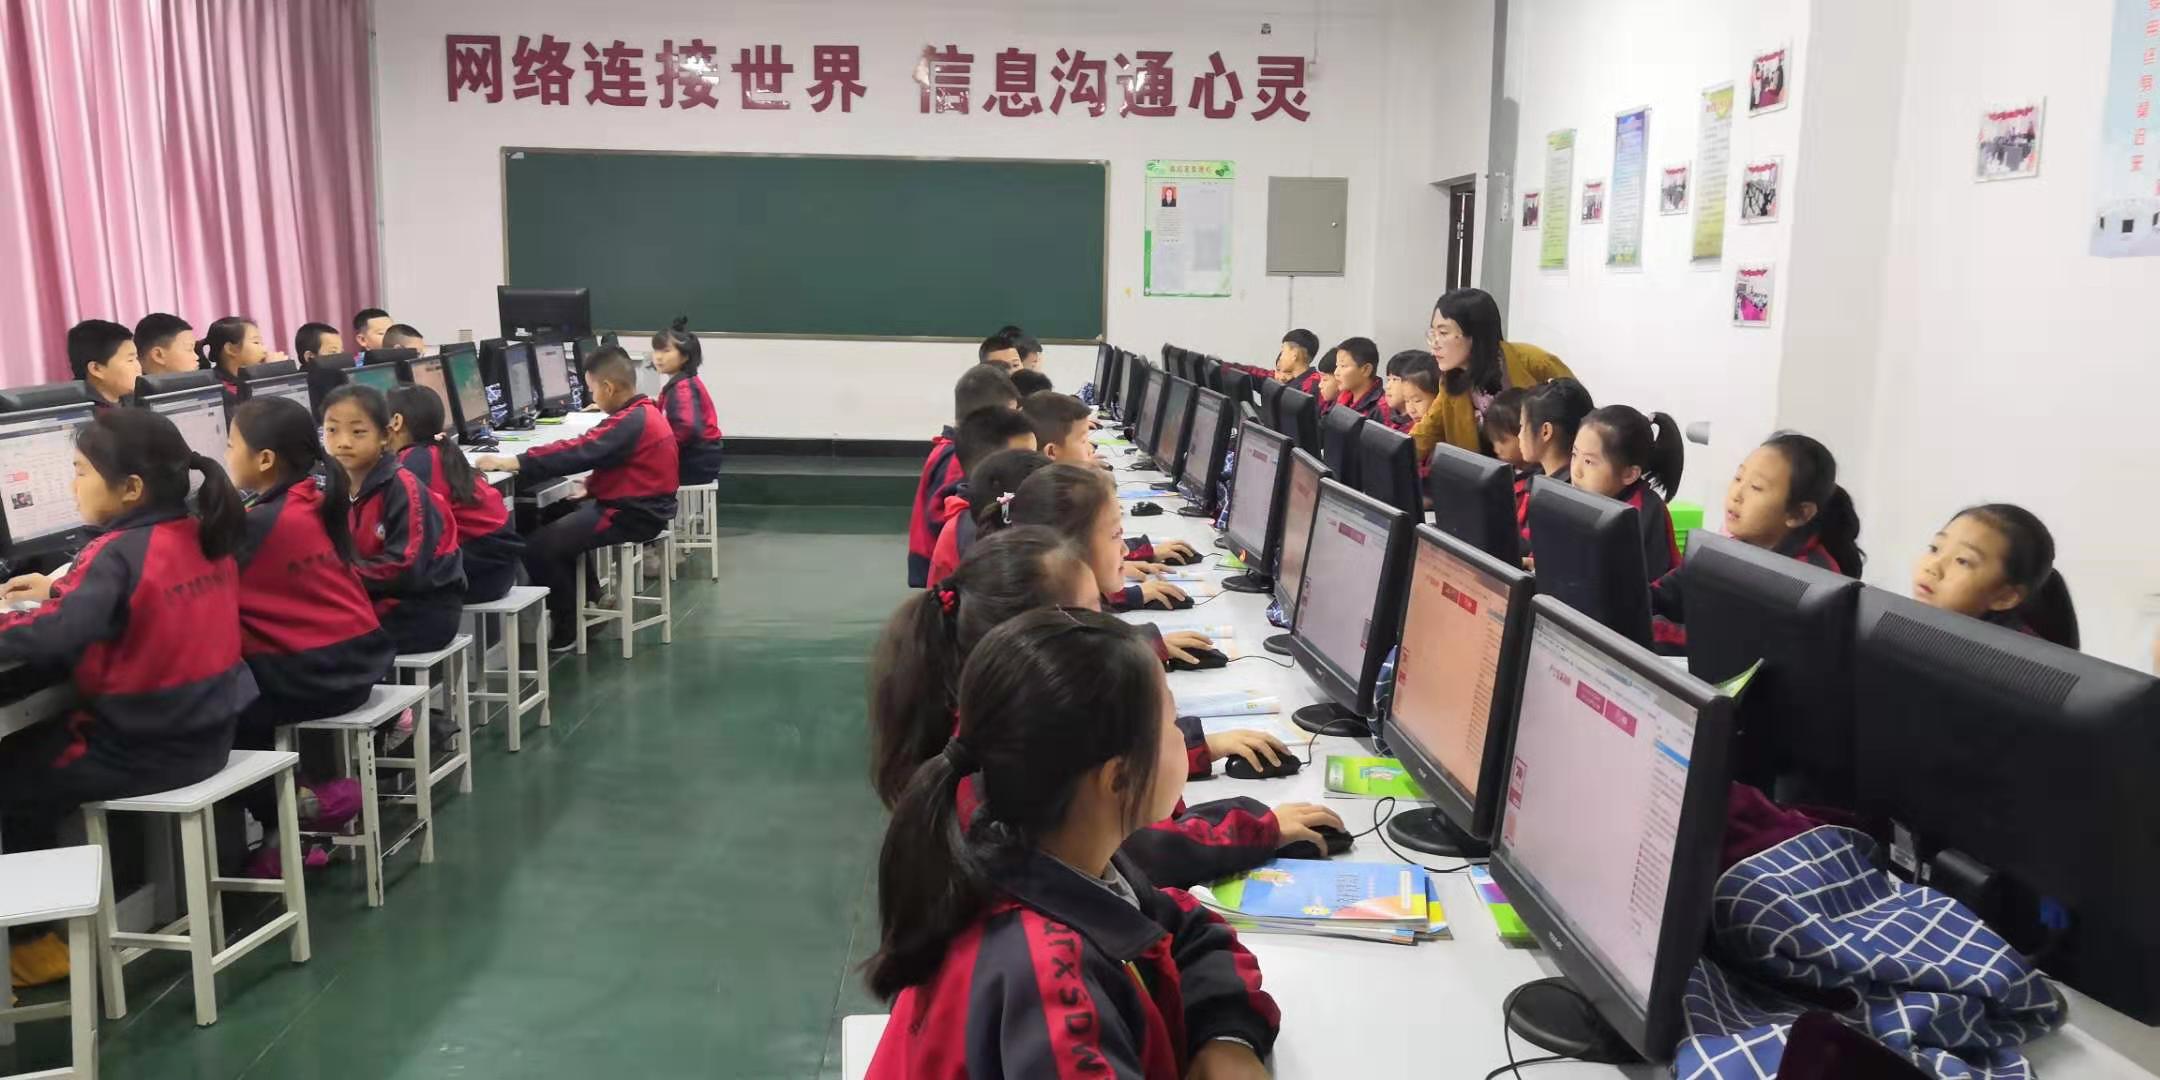 计算机教室2.jpg